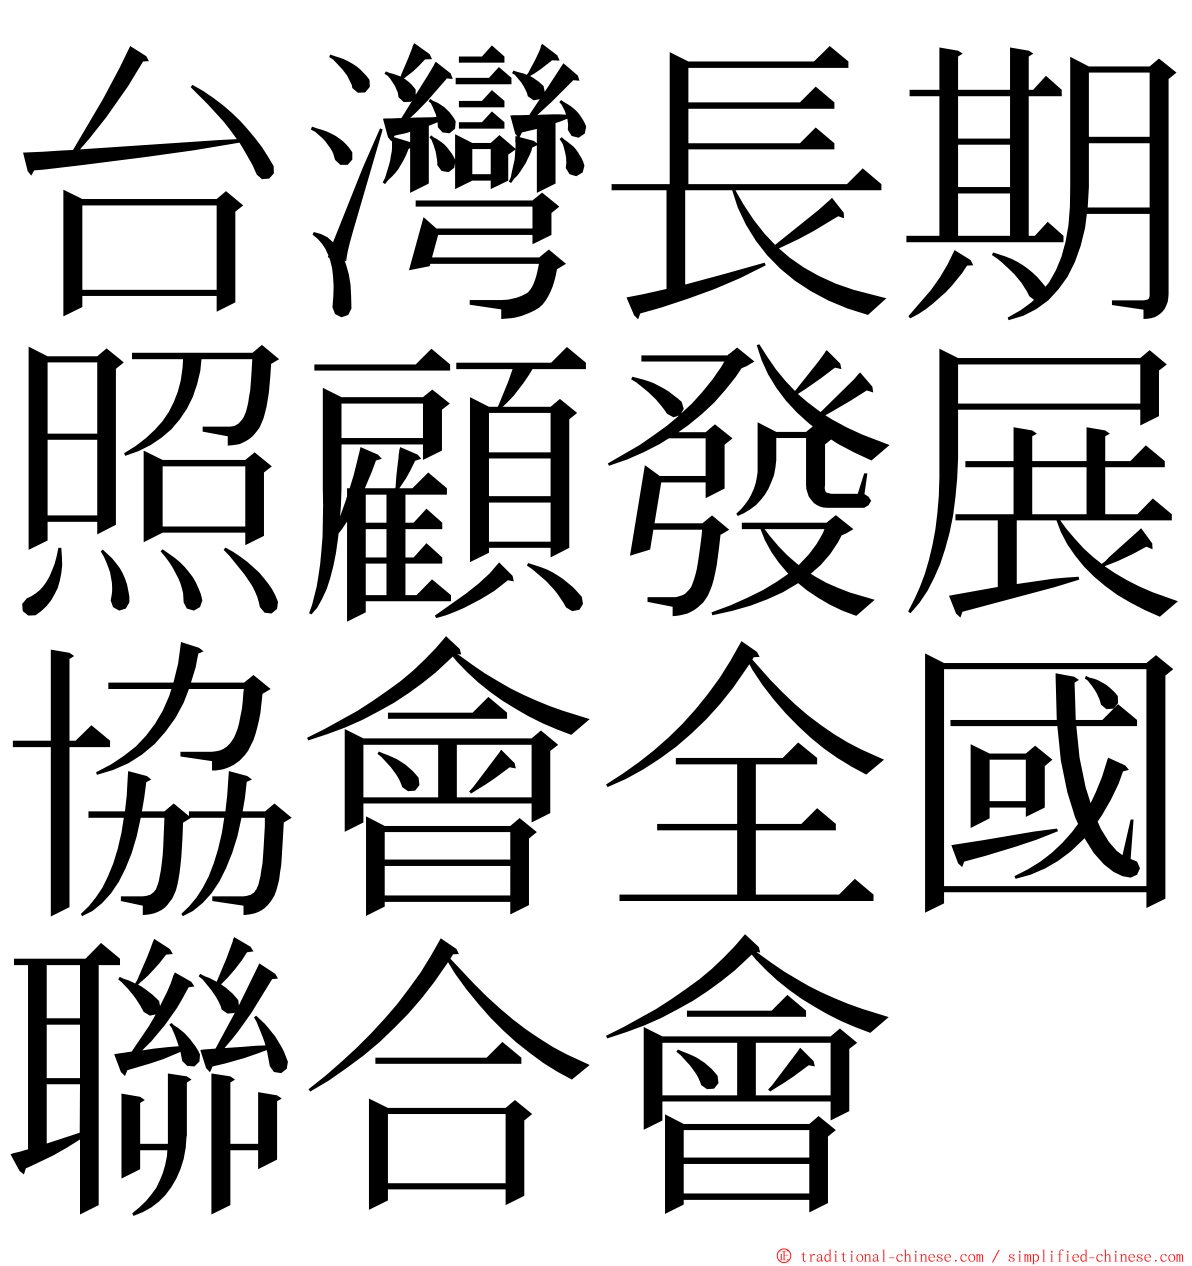 台灣長期照顧發展協會全國聯合會 ming font